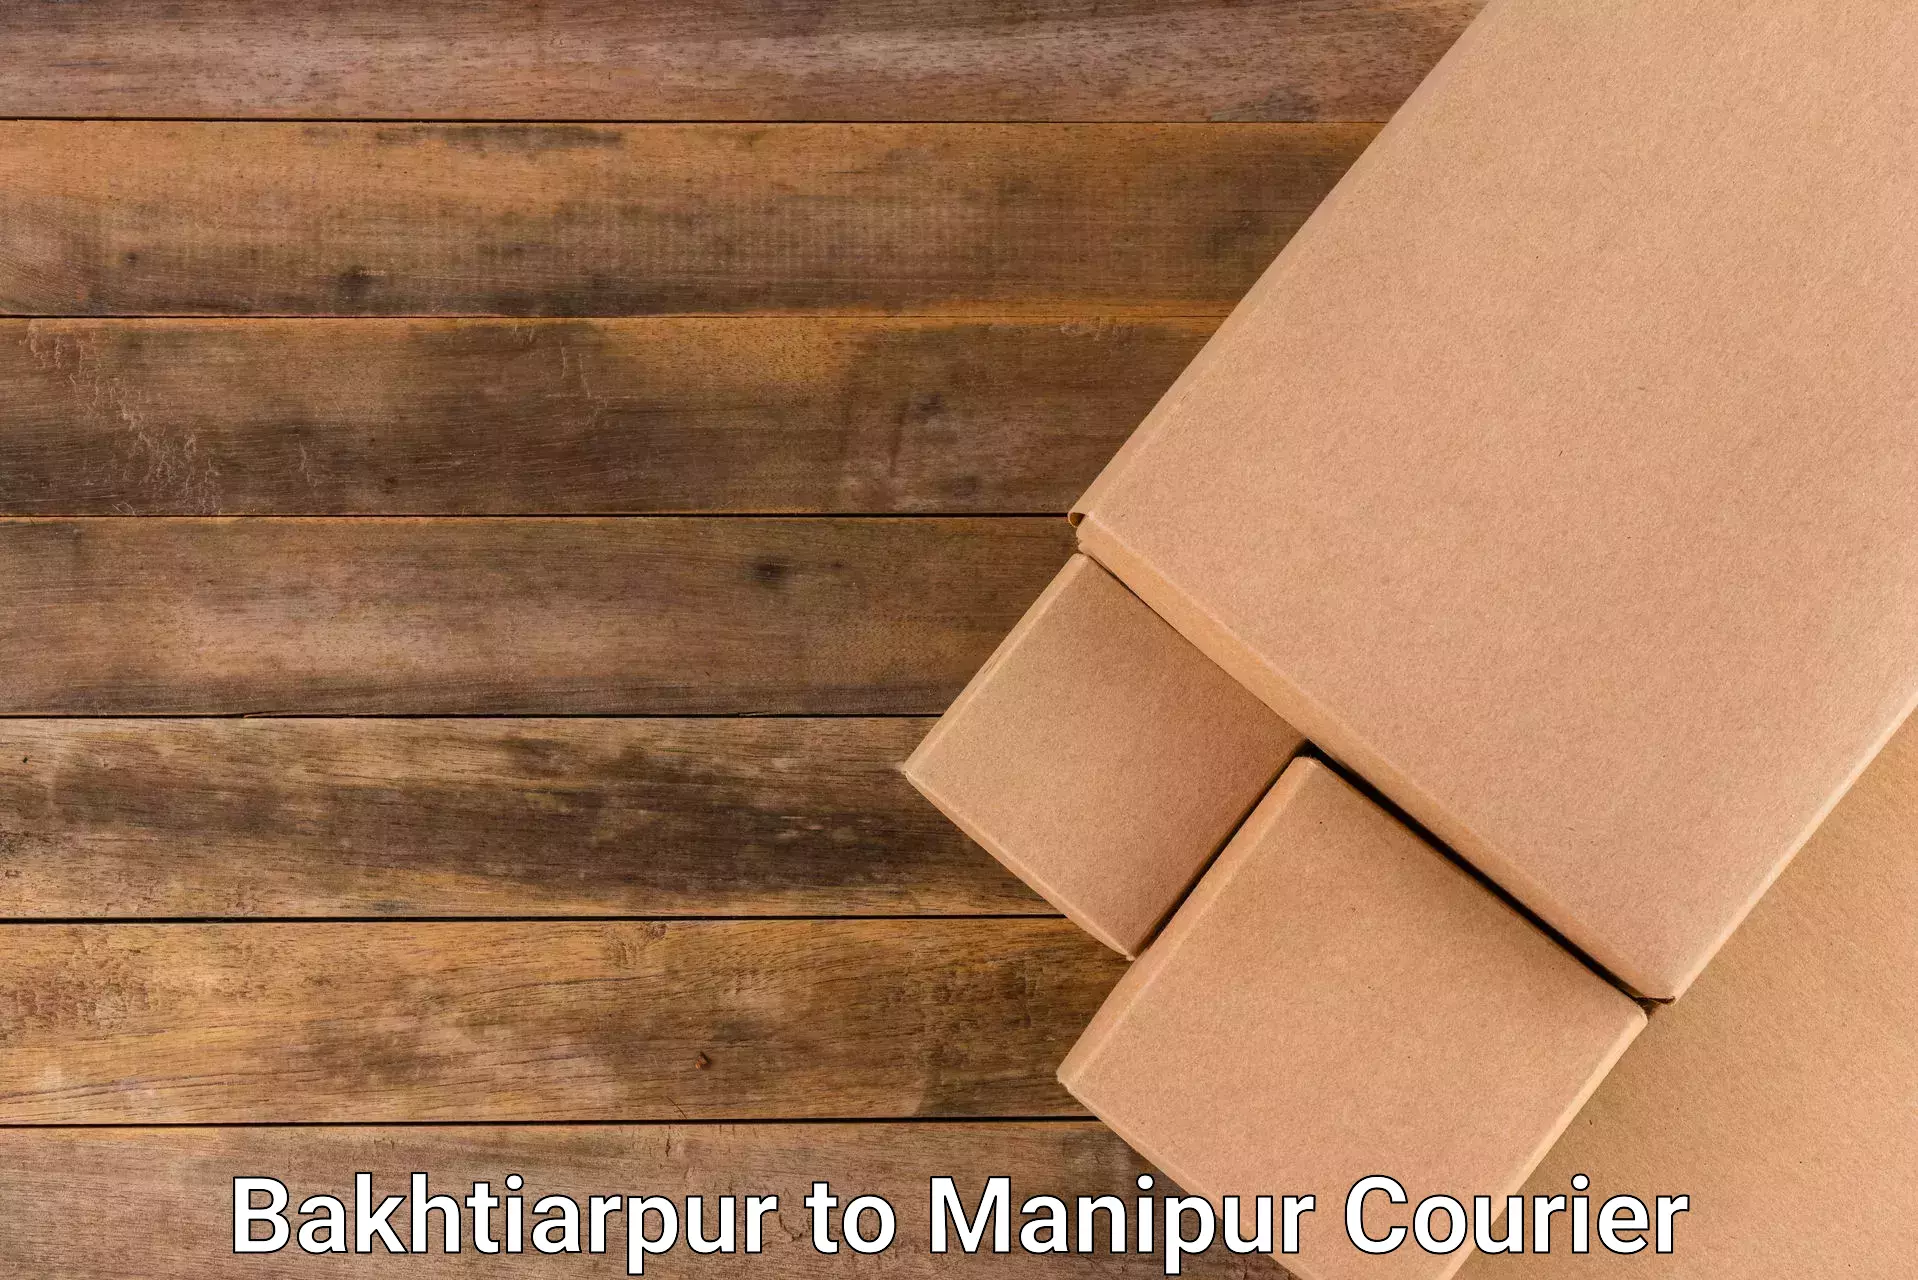 On-call courier service Bakhtiarpur to Moirang